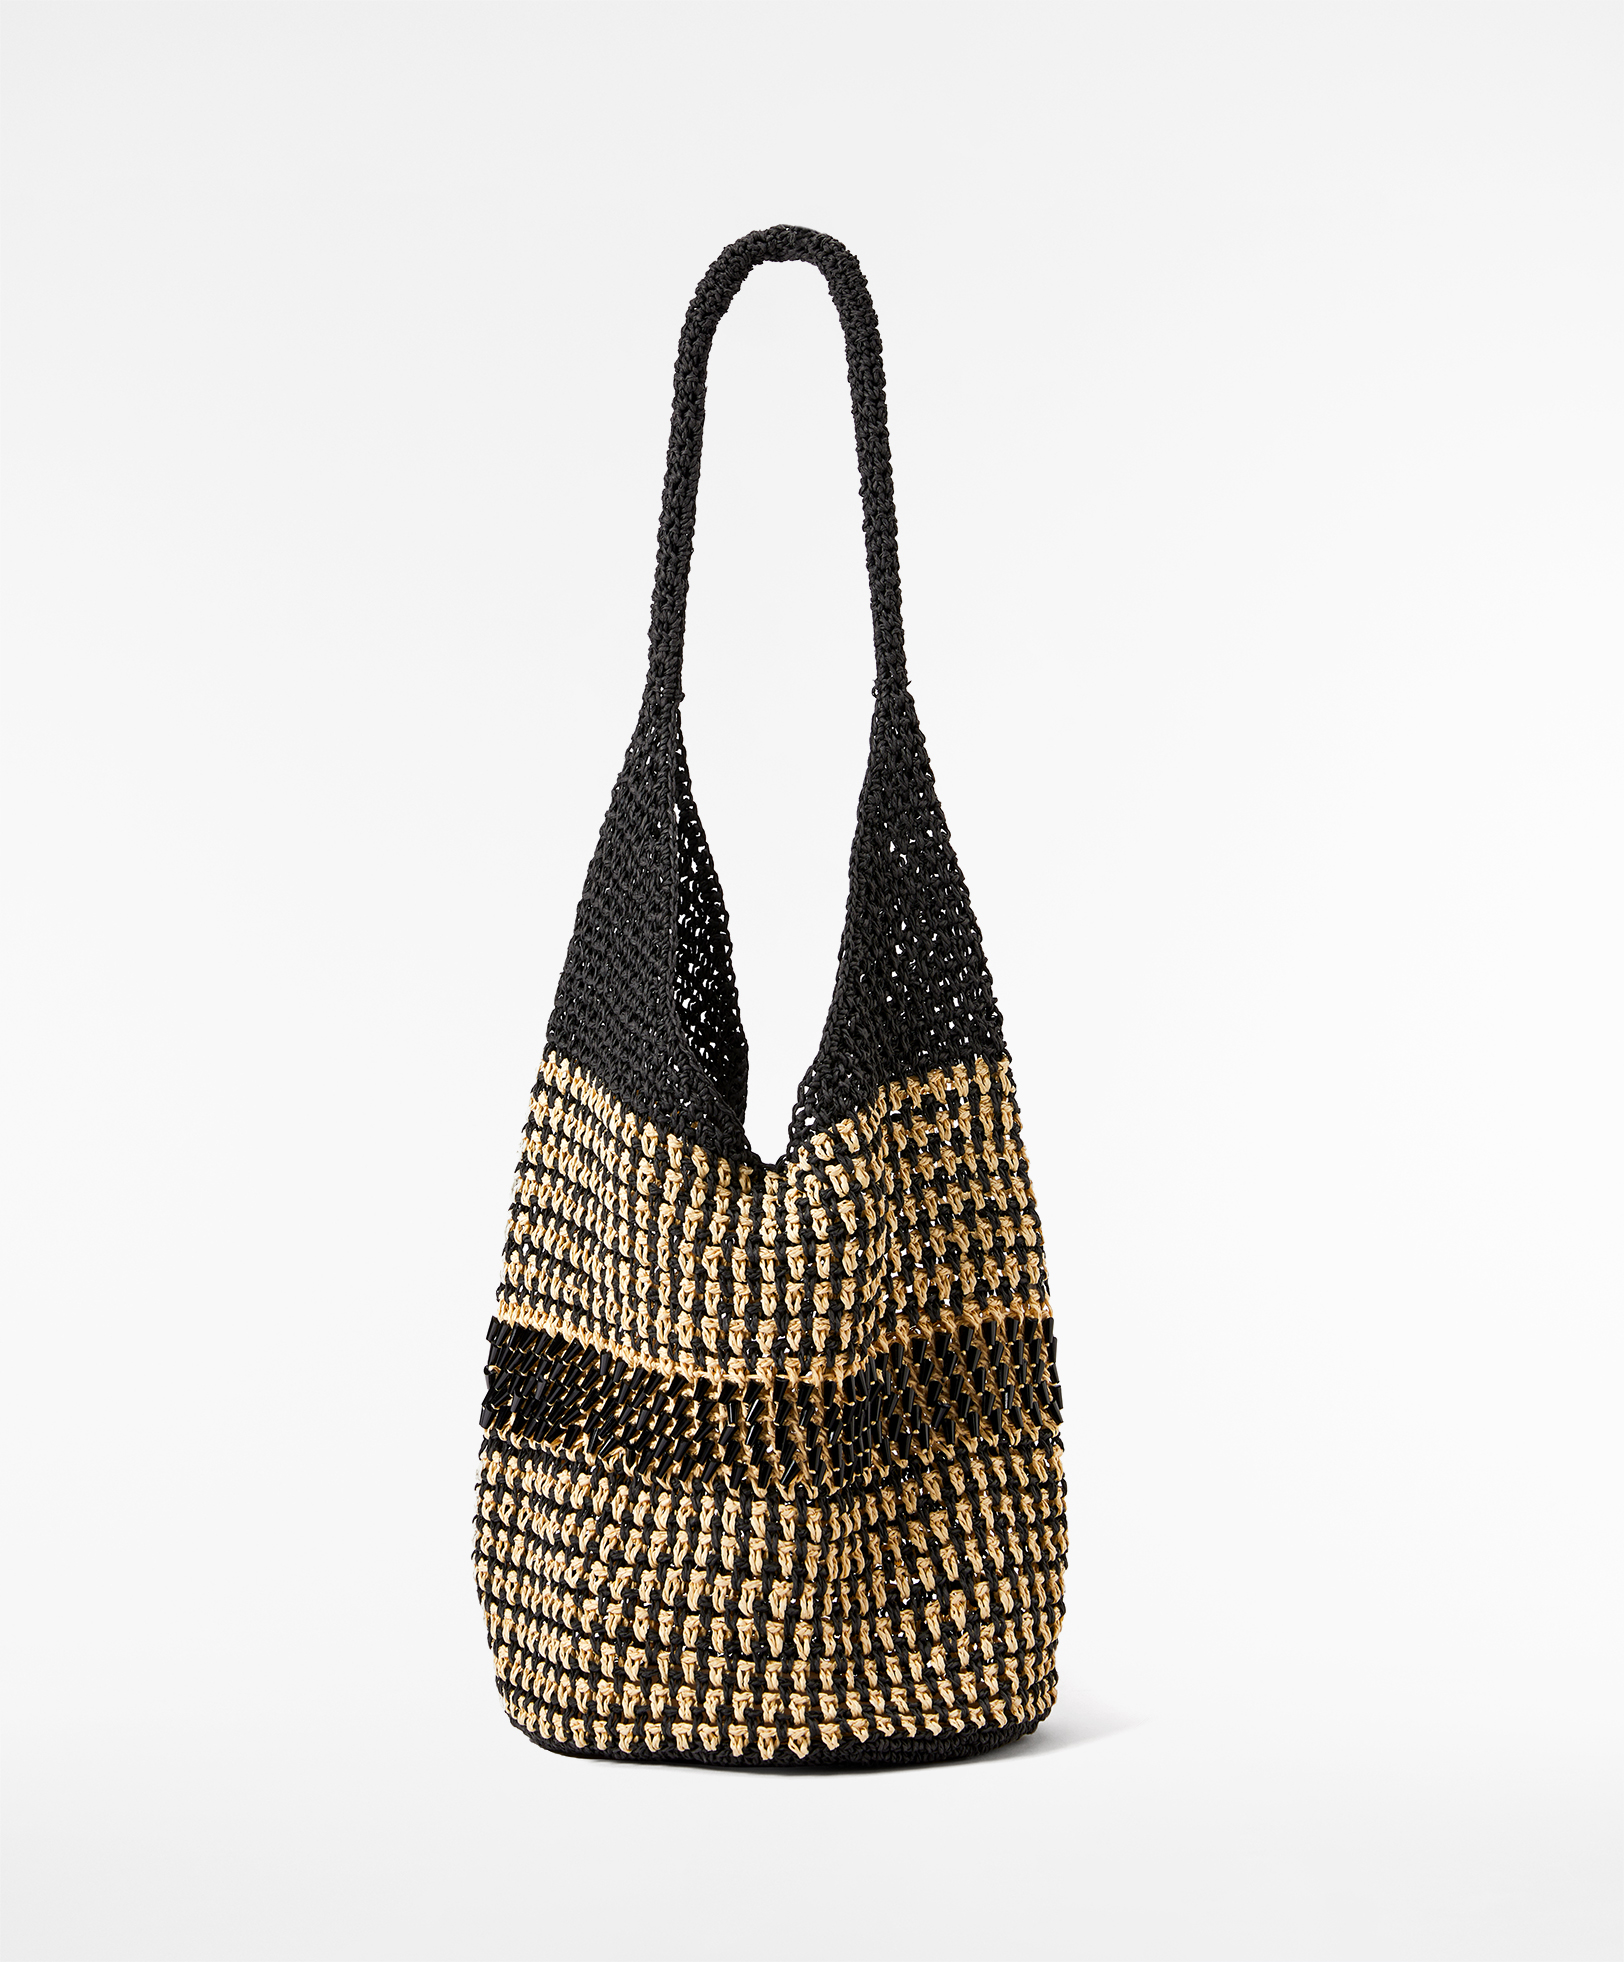 Stripe pattern woven bag